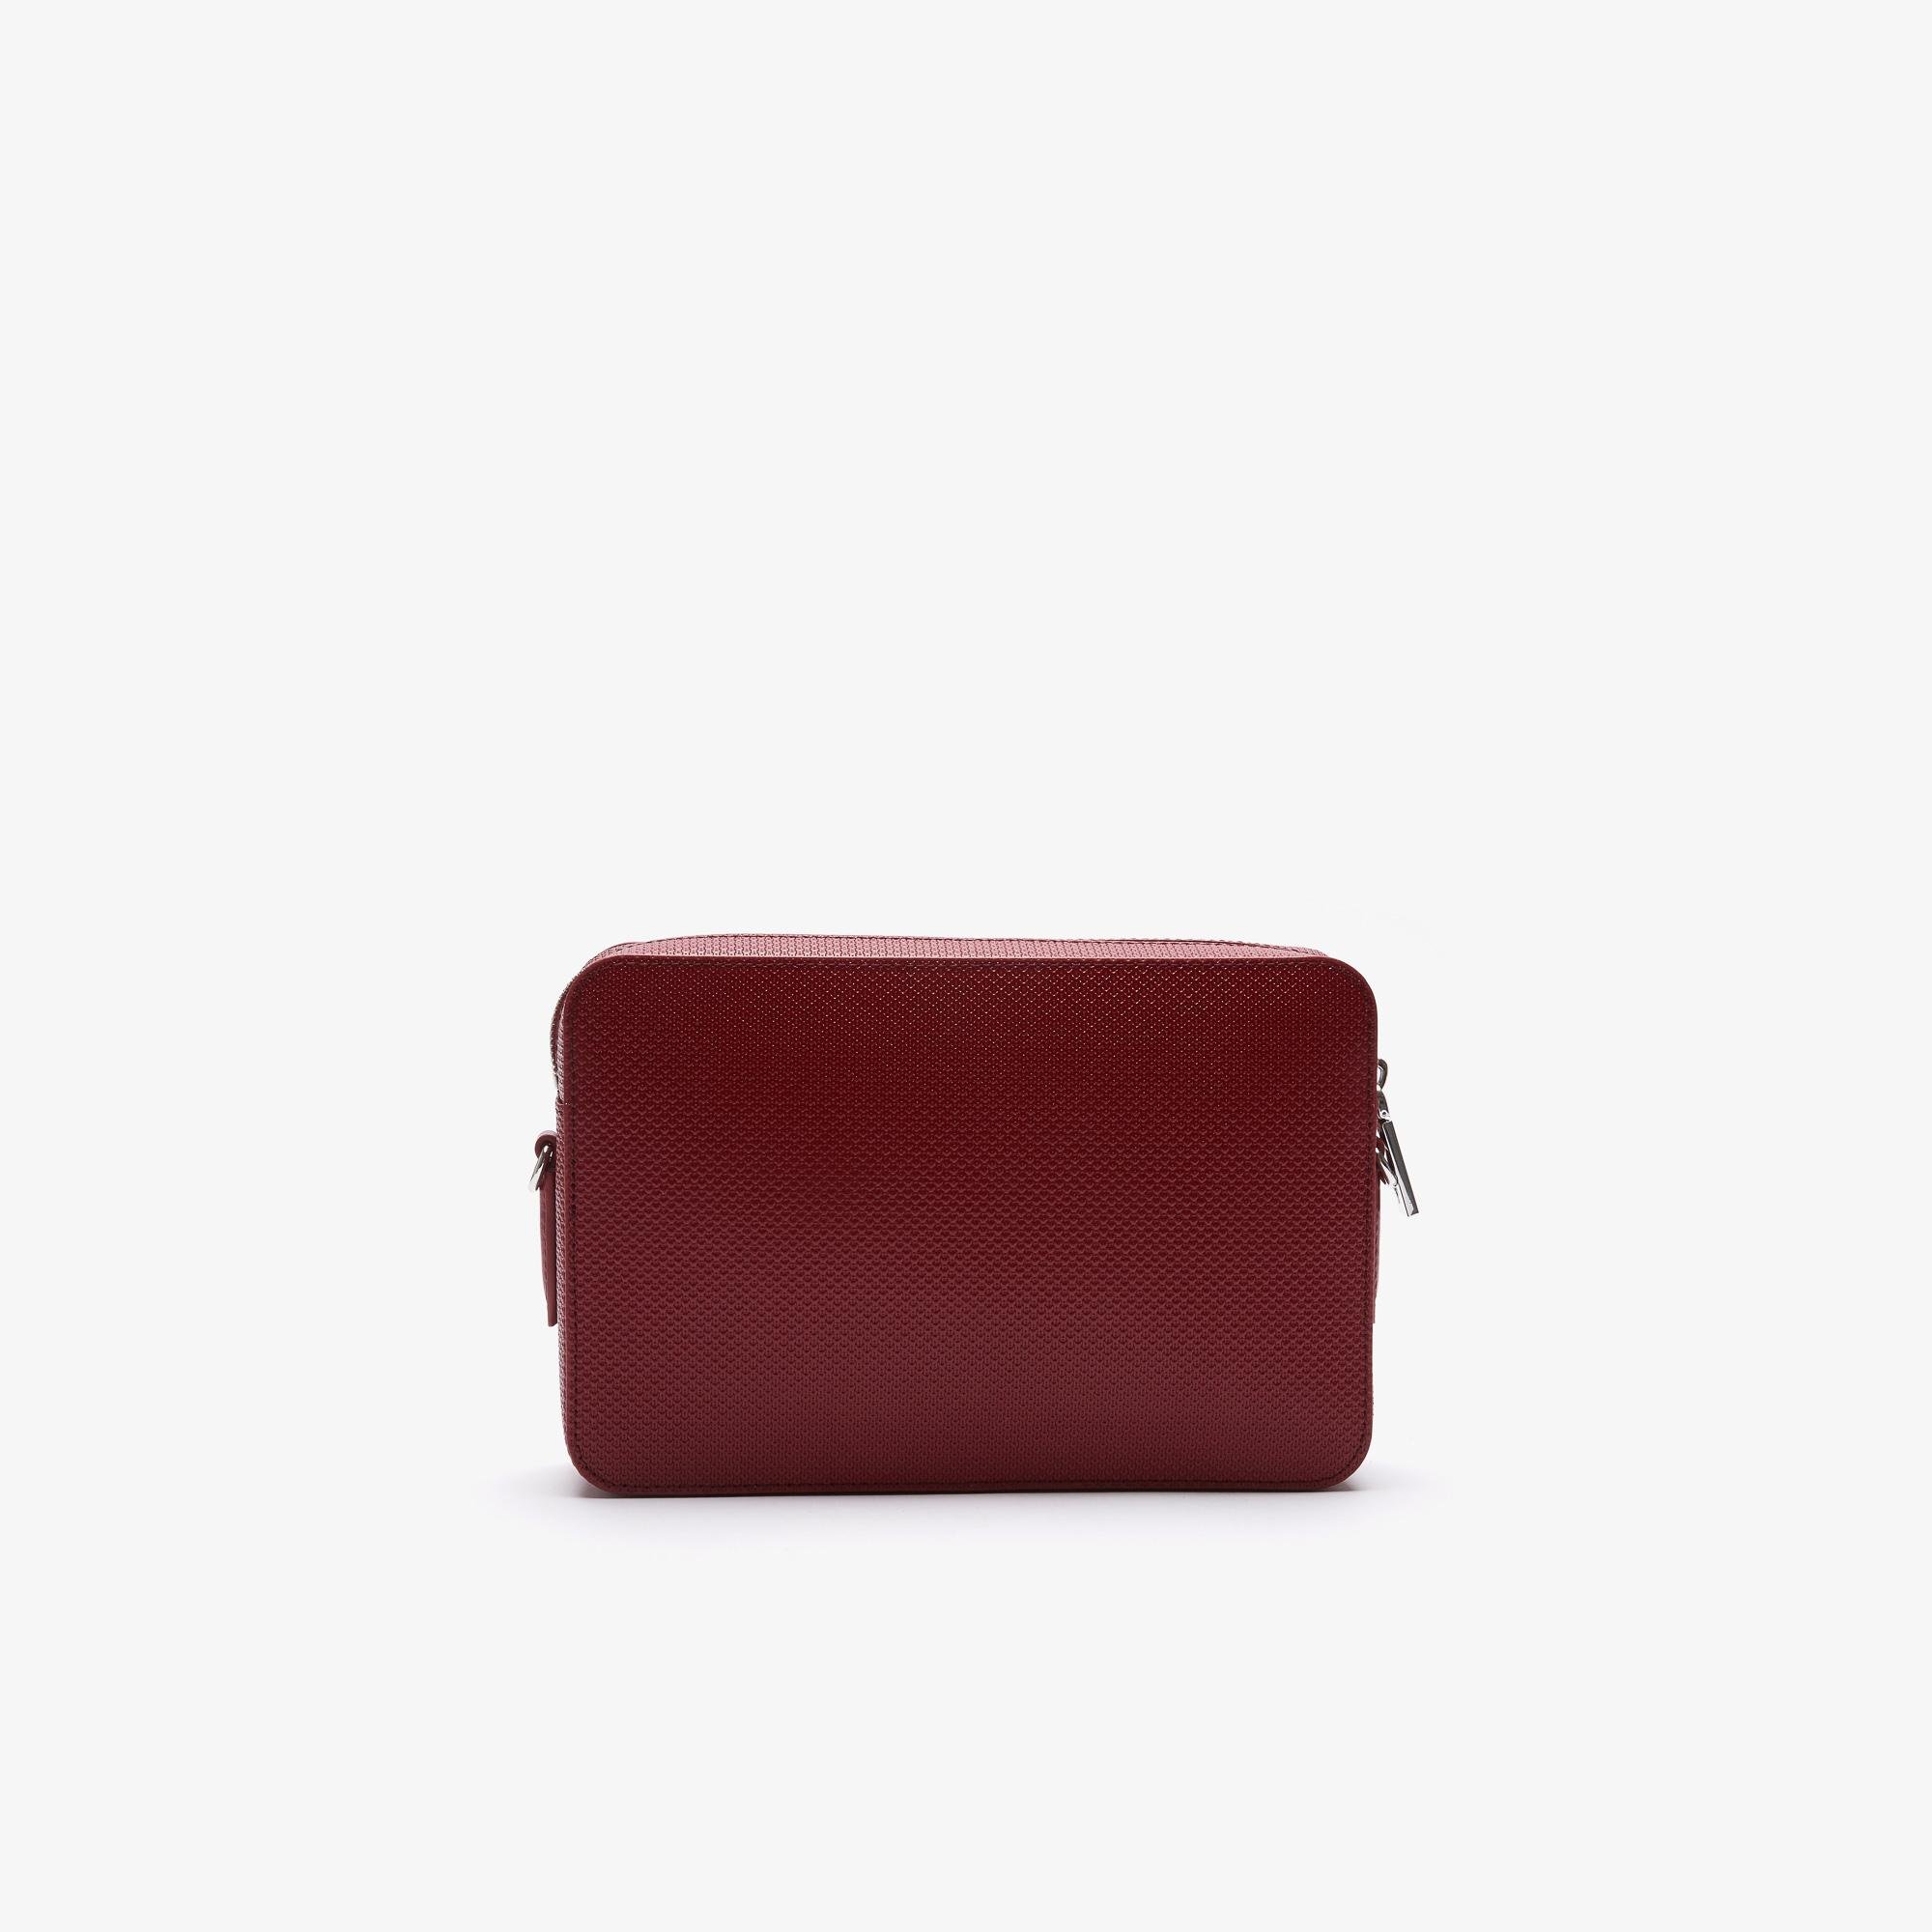 Lacoste Women’s Chantaco Detachable-Strap Premium Piqué Leather Bag